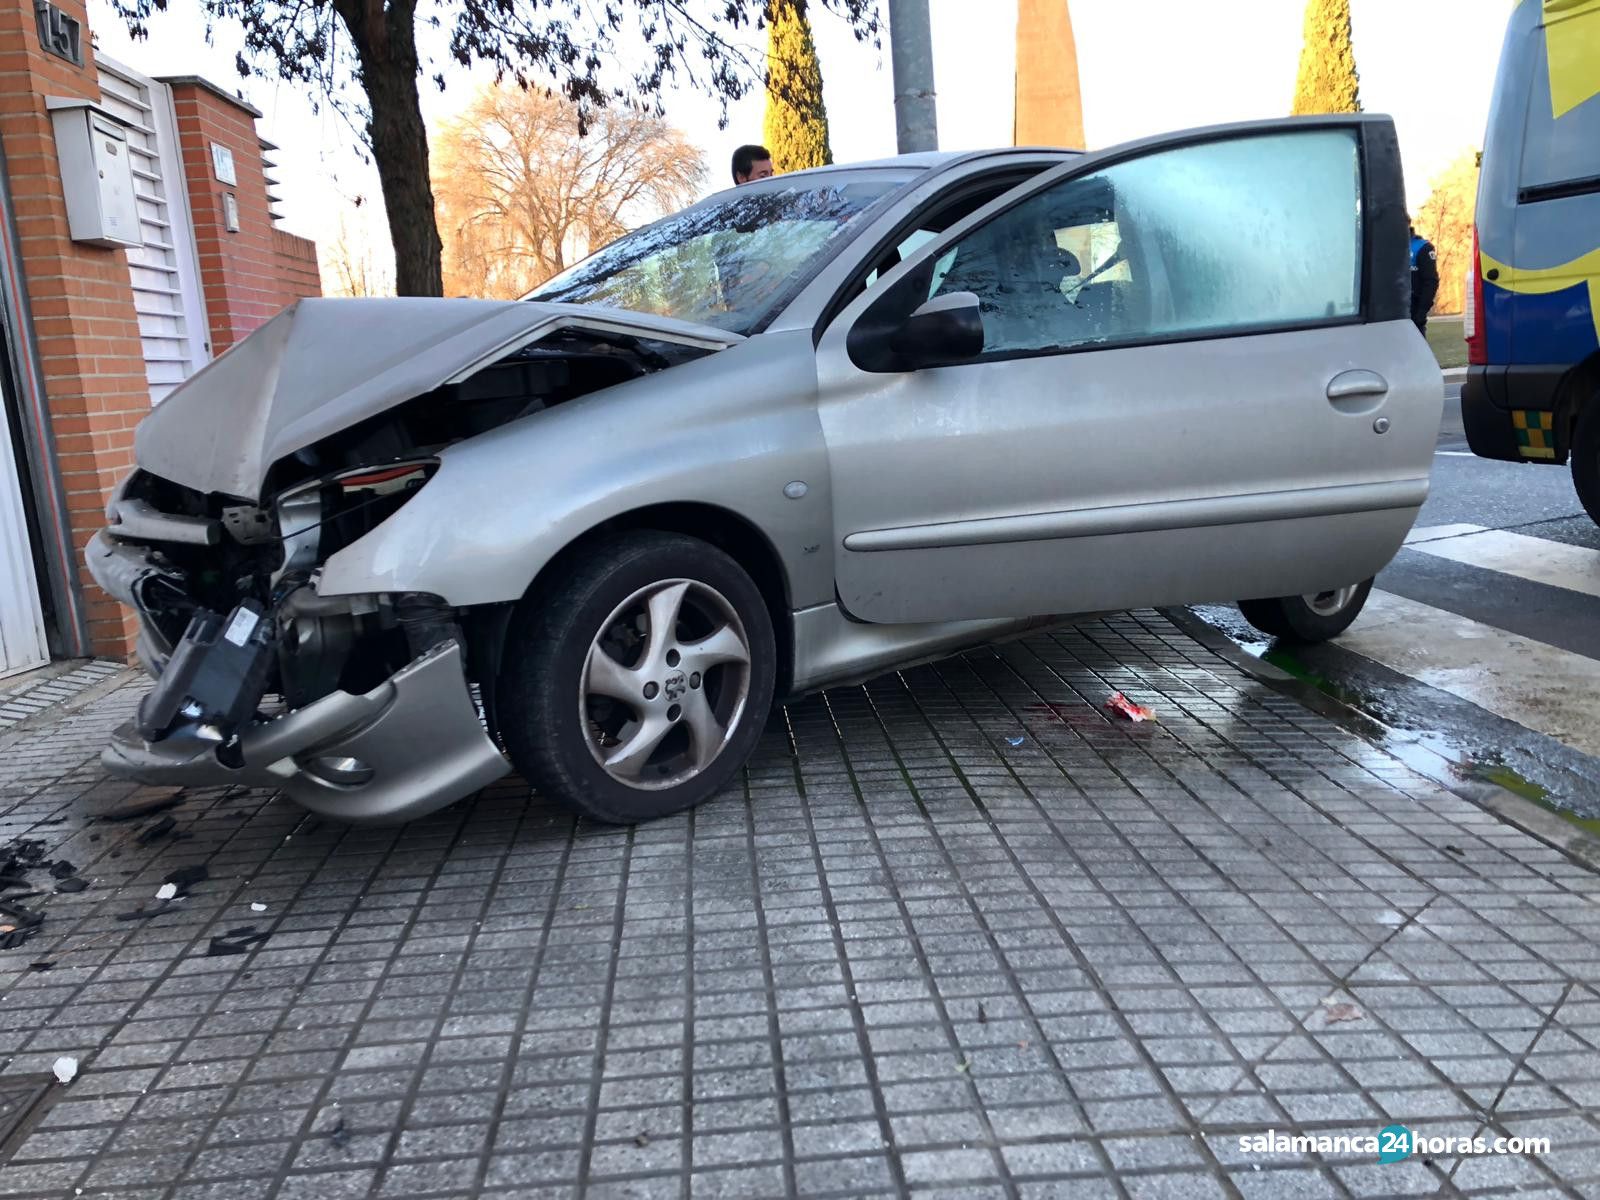  Accidente Ignacio Ellacuria 5 